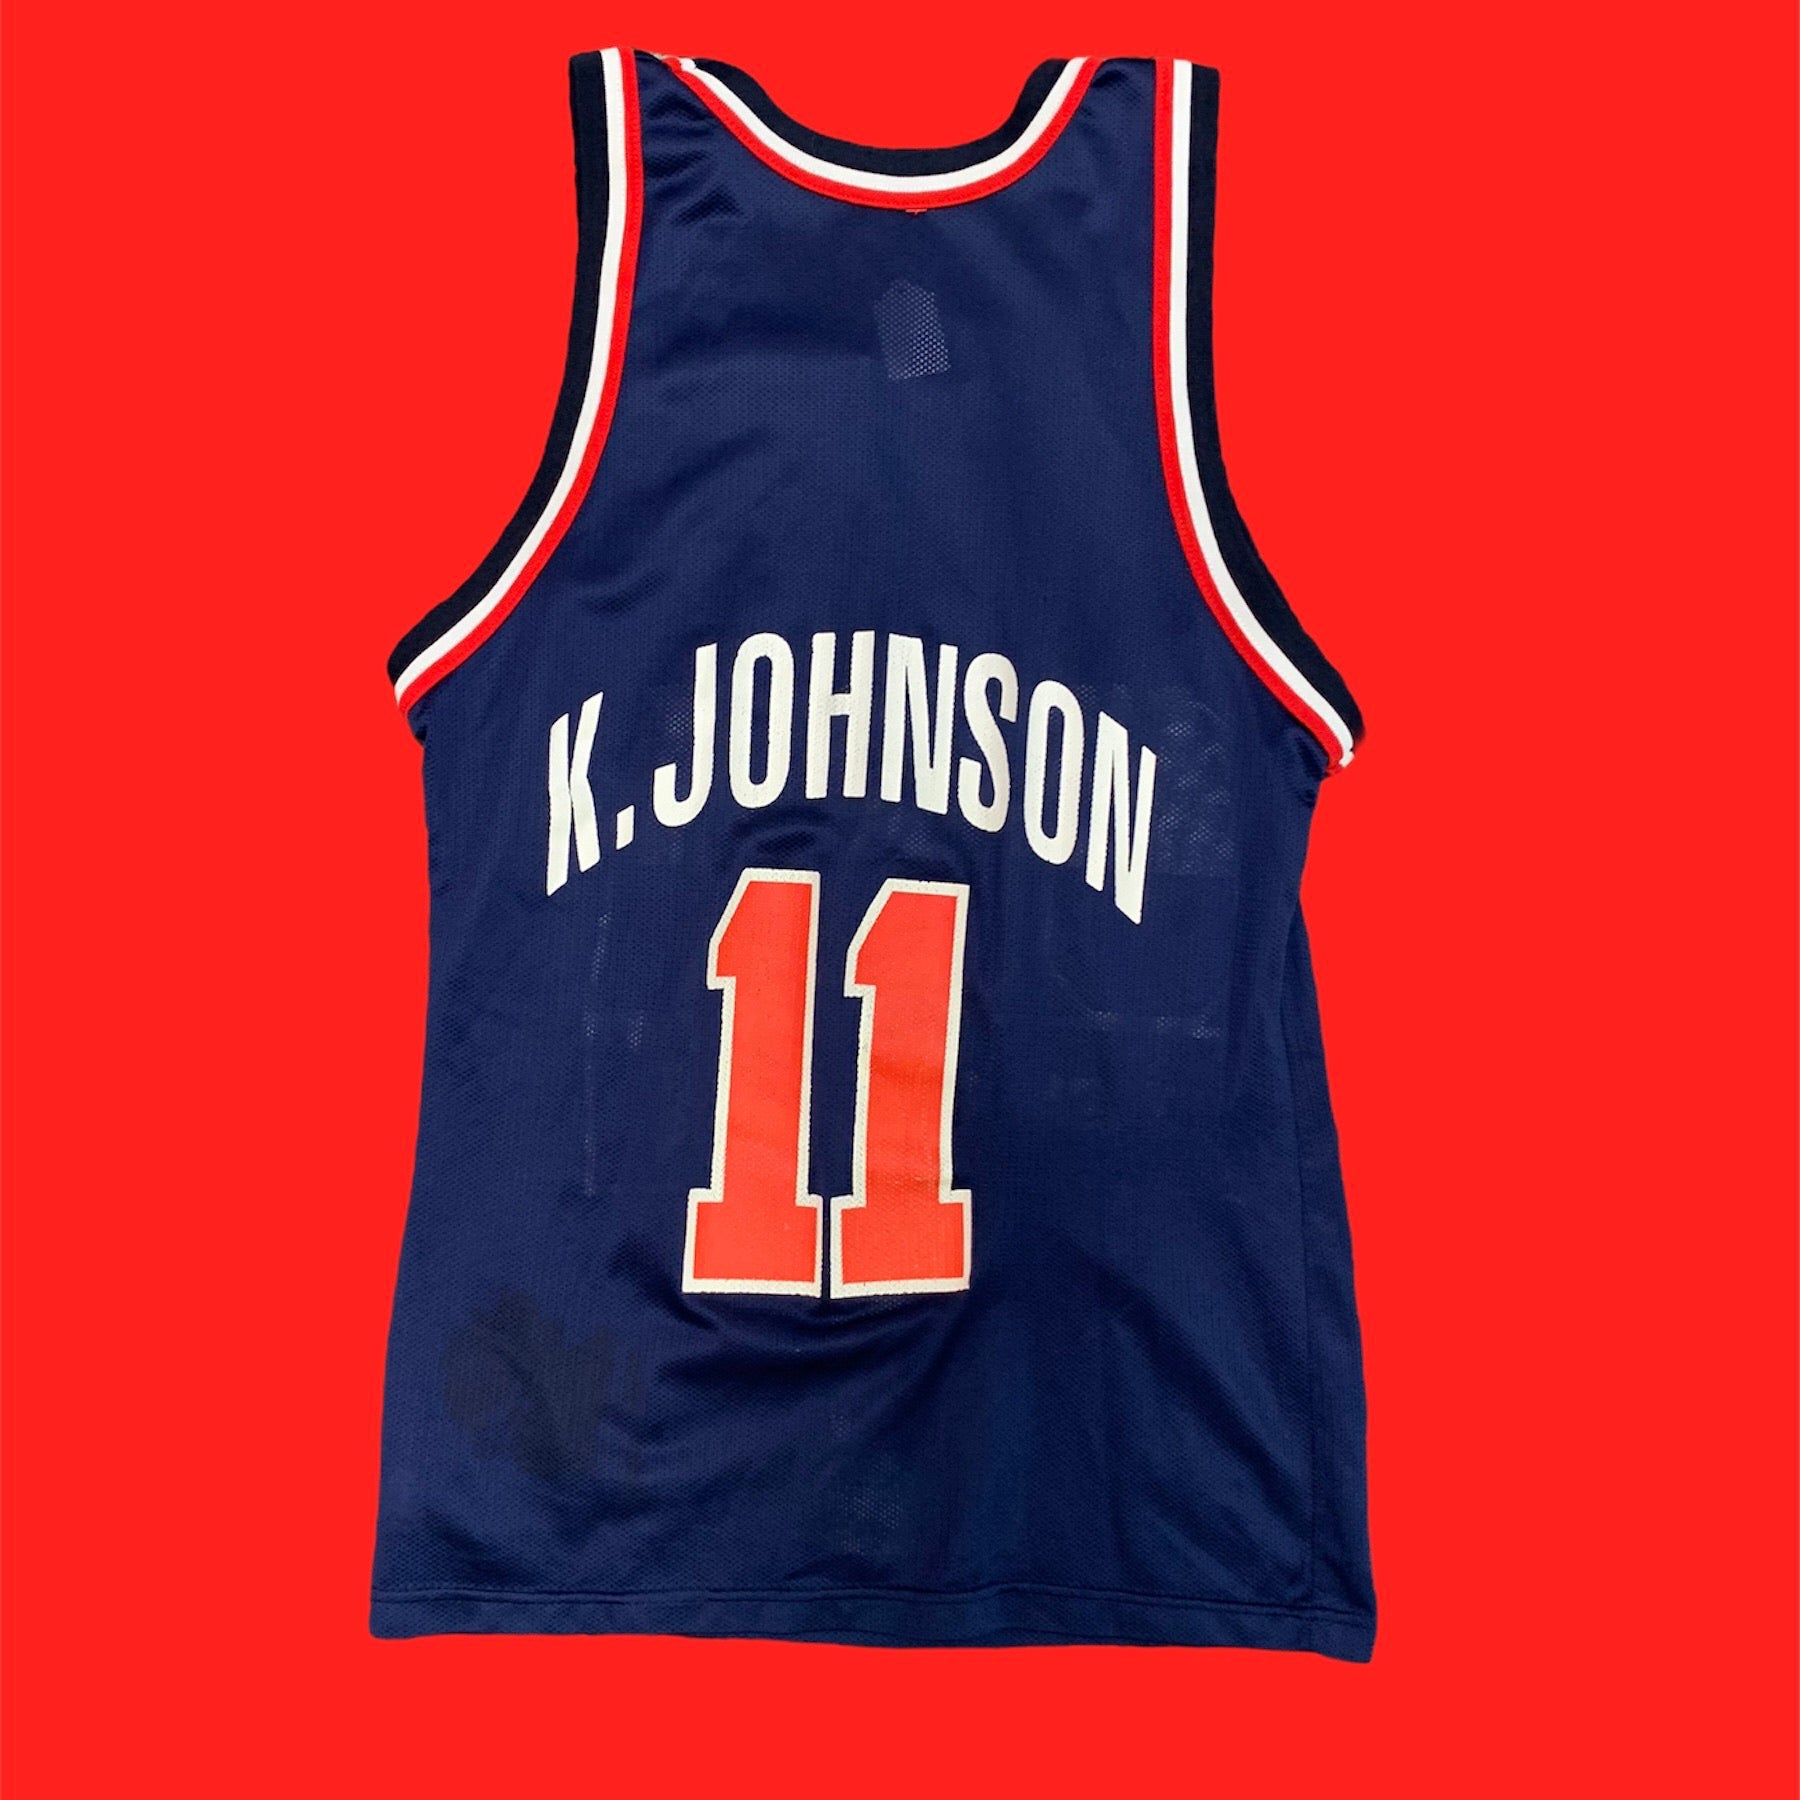 K. Johnson USA Champion Jersey S